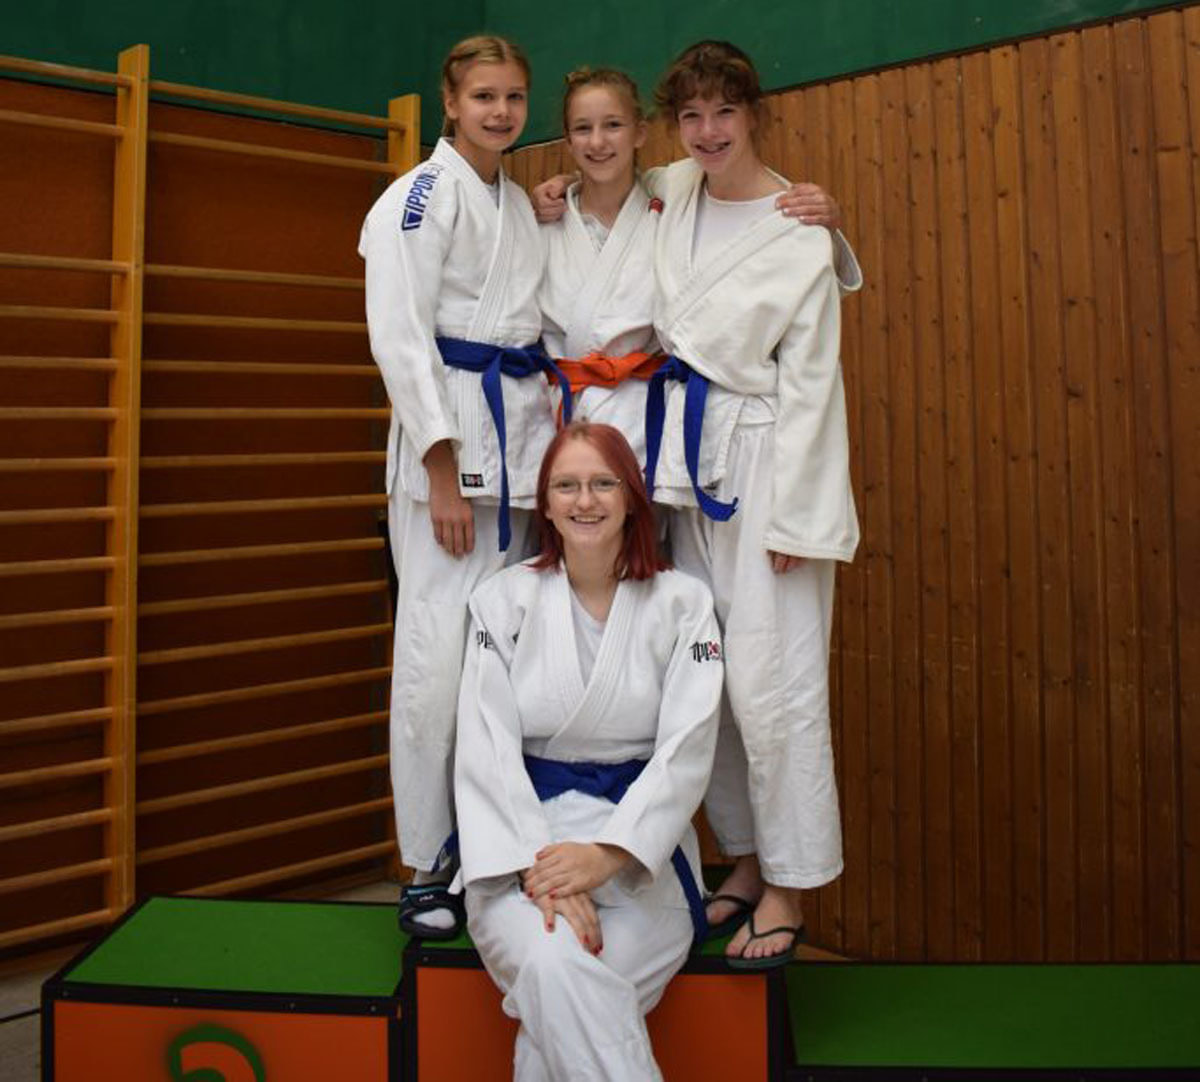 Groß war die Freude bei den Mädchen aus Werne nach dem guten Abschneiden beim Judoturnier in Holzwickede. Foto: privat